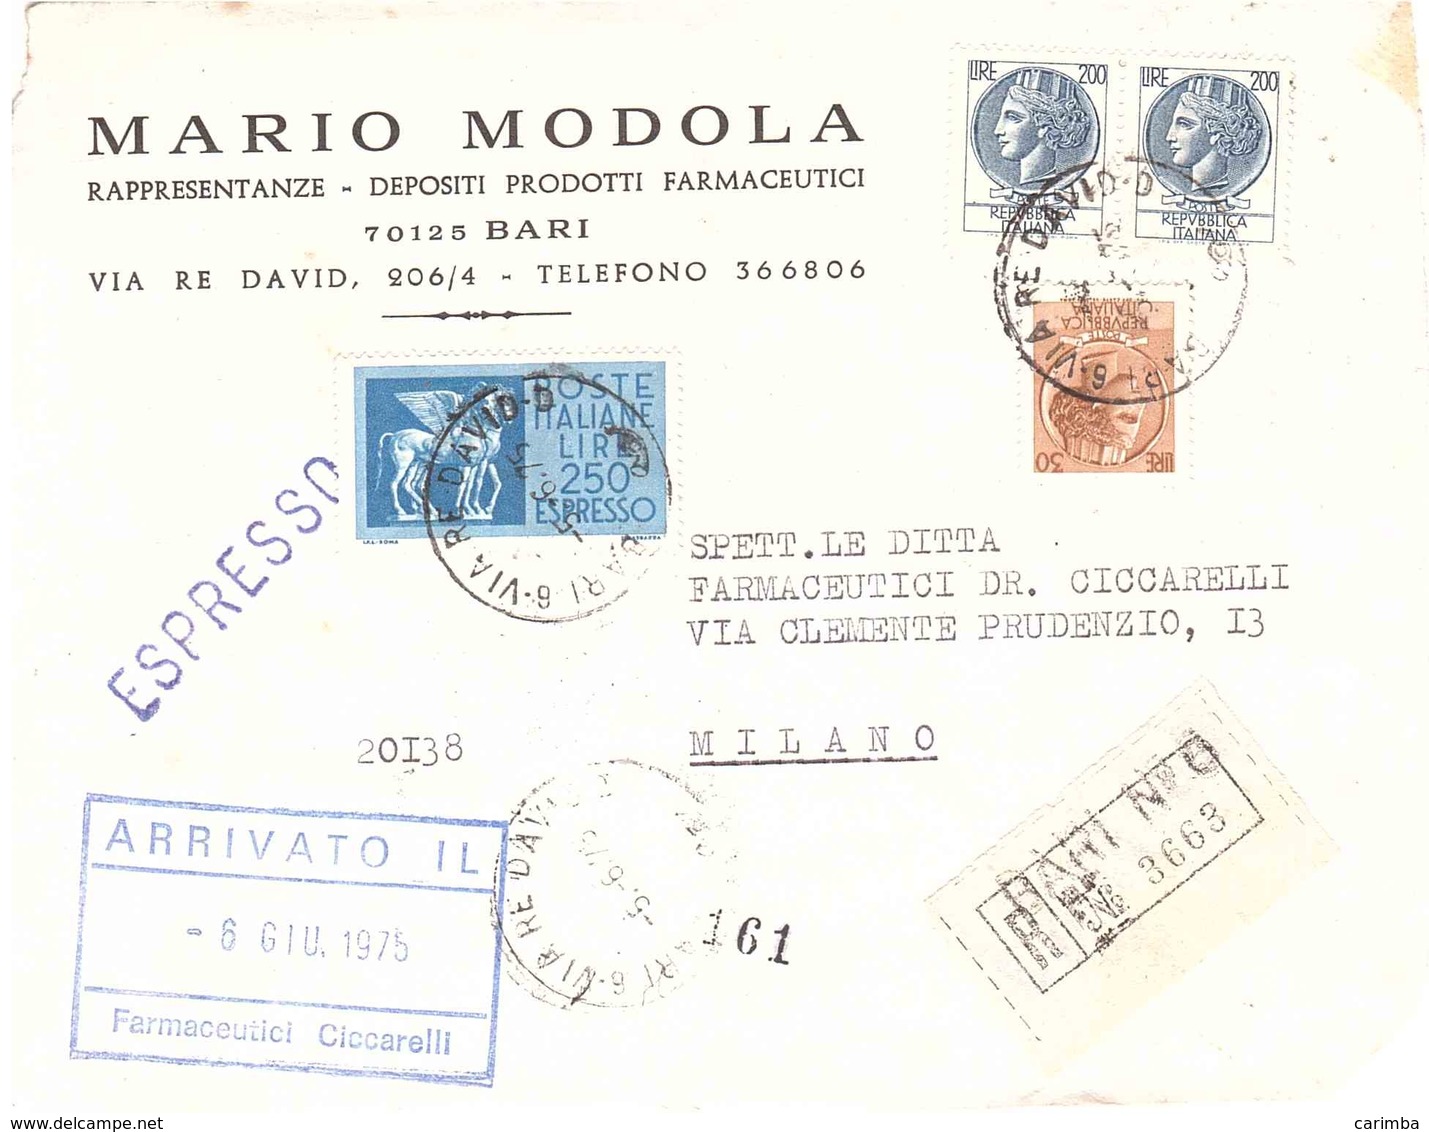 FRONTE RACC. EX BARI 6 VIA RE DAVIO MARIO MODOLA PRODOTTI FARMACEUTICI BARI - 1971-80: Marcofilie